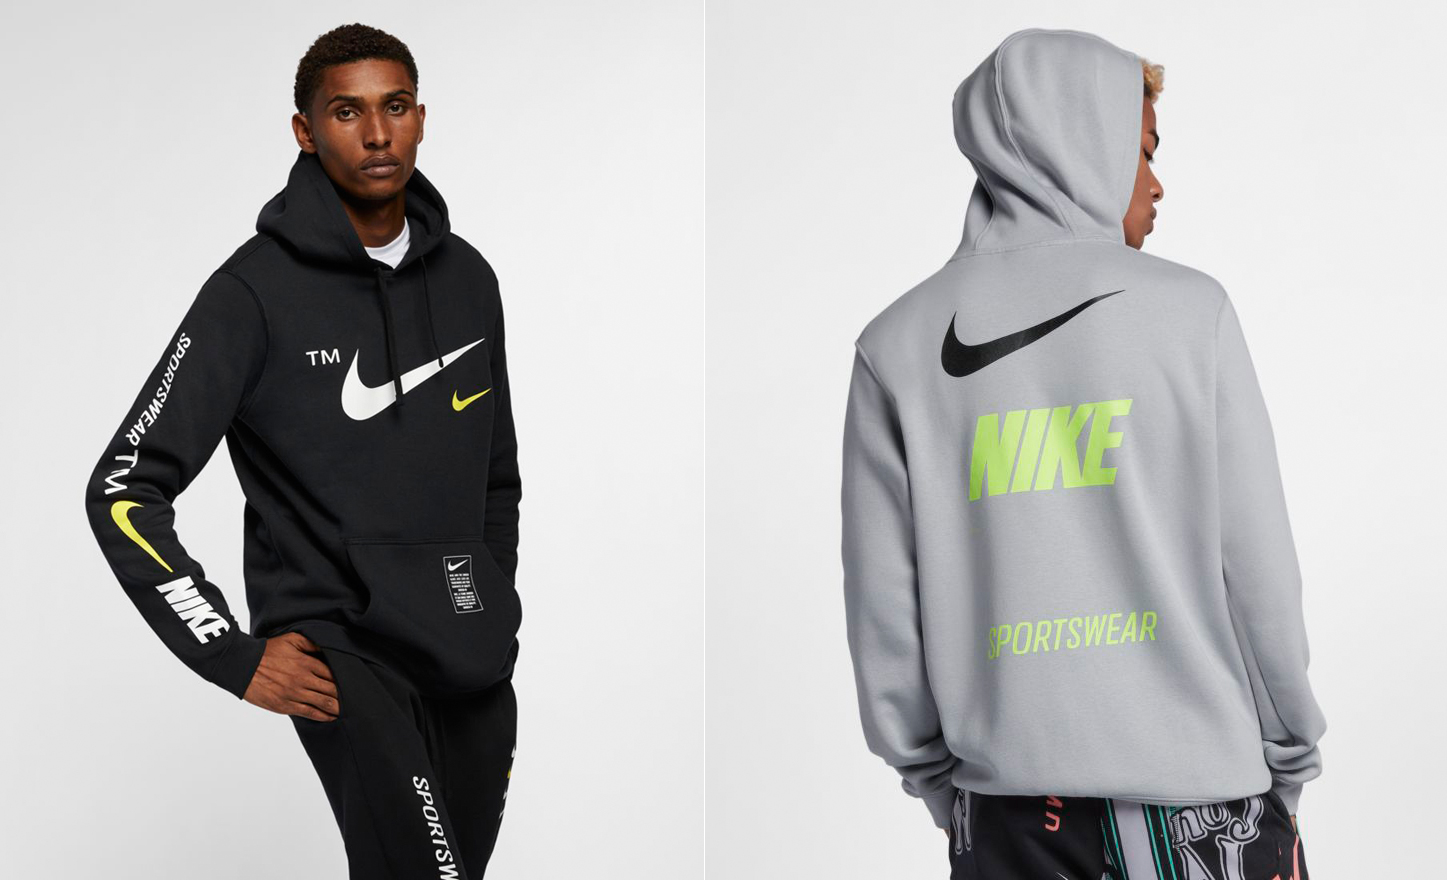 nike-sportswear-microbranding-hoodie